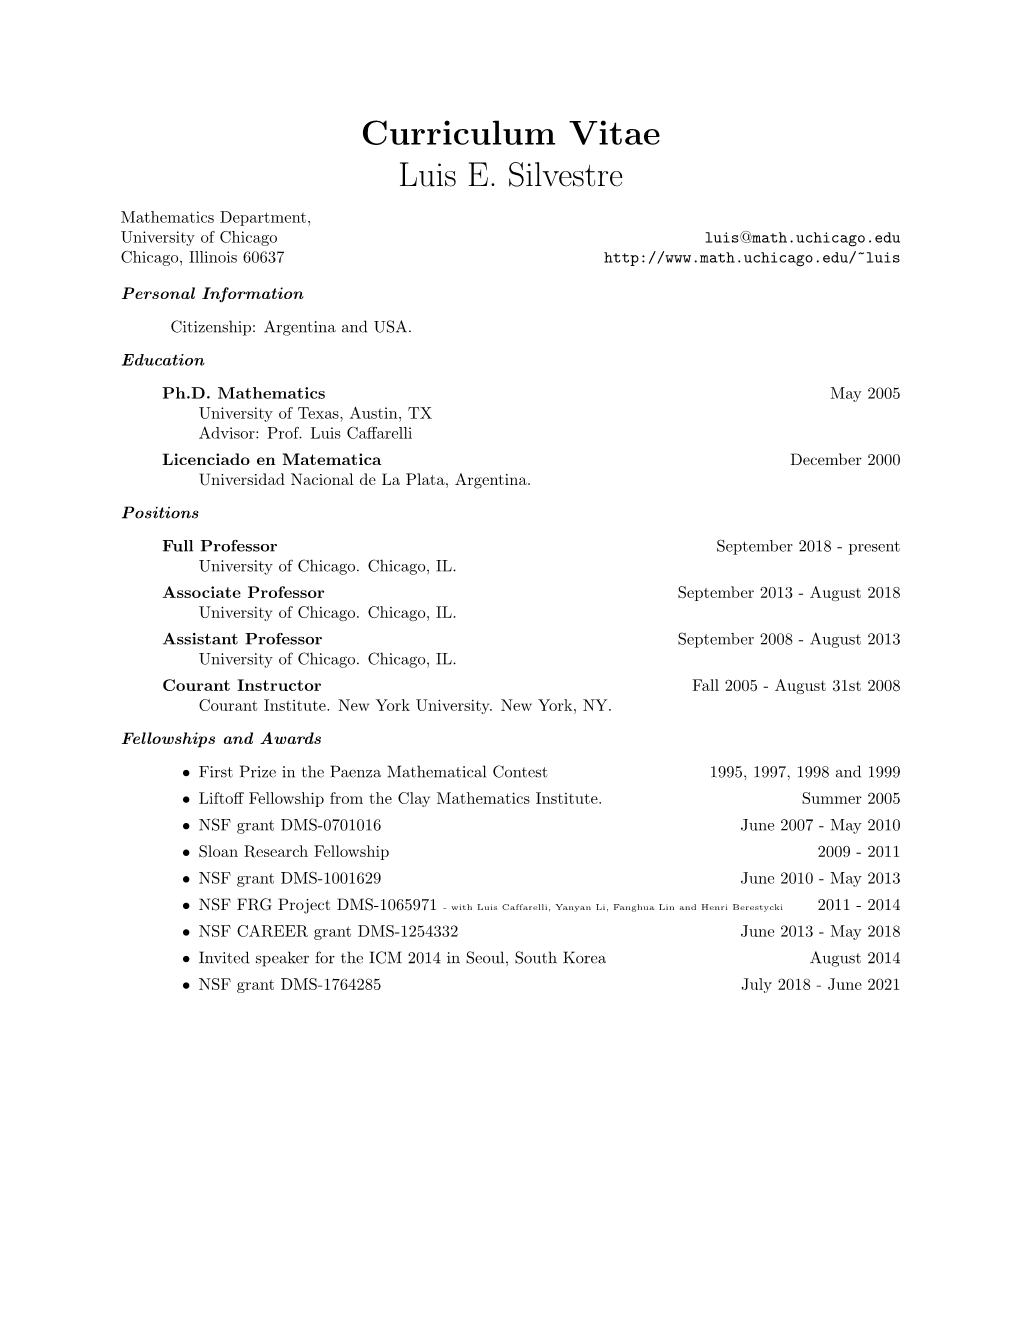 Curriculum Vitae Luis E. Silvestre Mathematics Department, University of Chicago Luis@Math.Uchicago.Edu Chicago, Illinois 60637